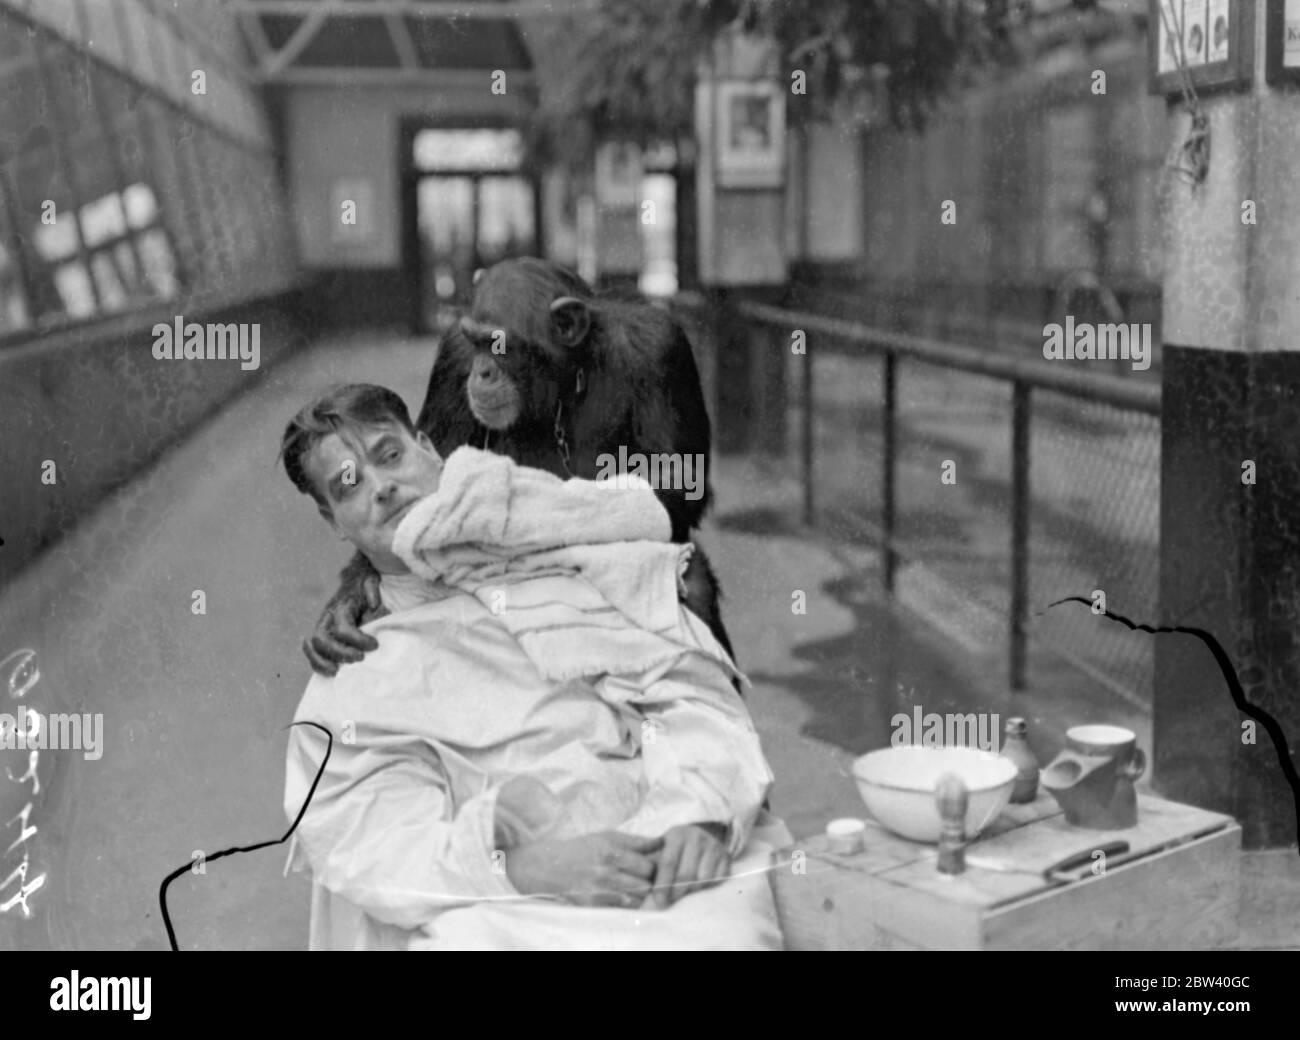 Peter, lo zoo chimp, dà al suo custode una rasatura profonda! Il guardiano Harry Brown si rade ogni giorno nella Monkey House dello Zoo di Londra infornò Peter, l'impressionante scimpanzé, con il desiderio di provare la propria mano come barbiere. Keeper Brown, rasato, polverizzato e spazzolare giù dal chimp intelligente. Foto: Peter strofinare il laccio in eccesso dopo aver strofinato il rasoio. 8 aprile 1937 Foto Stock